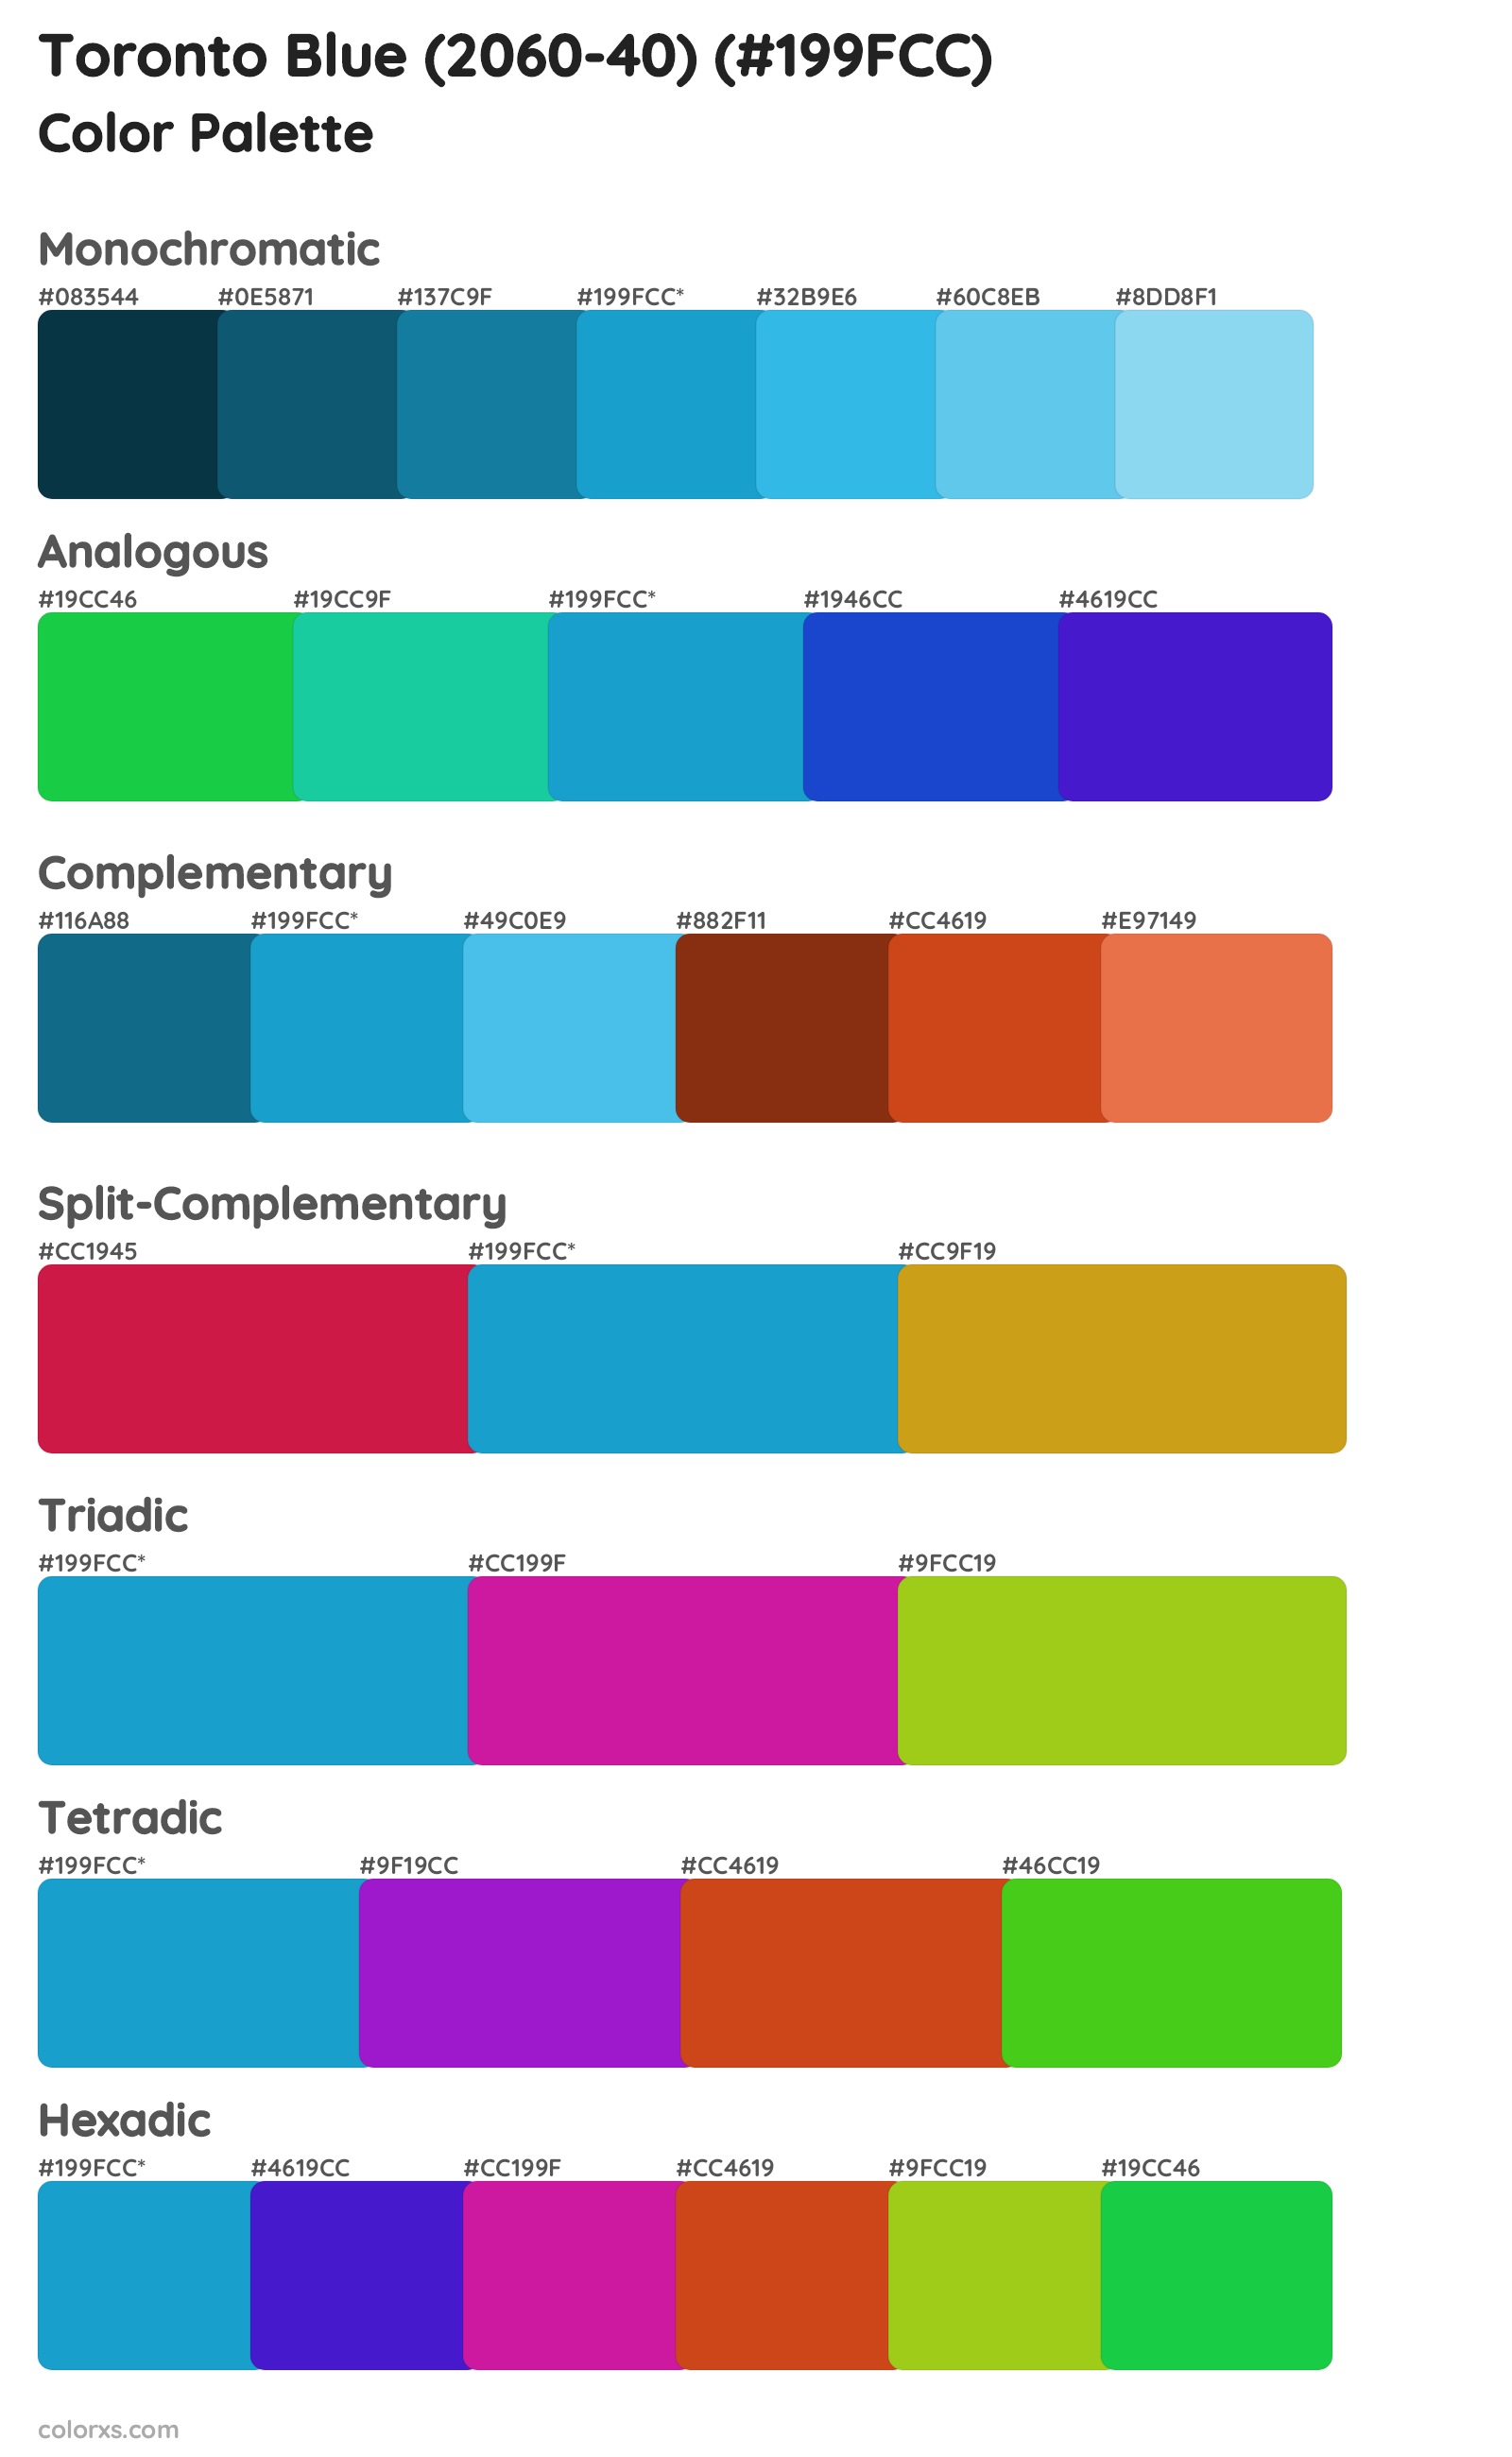 Toronto Blue (2060-40) Color Scheme Palettes